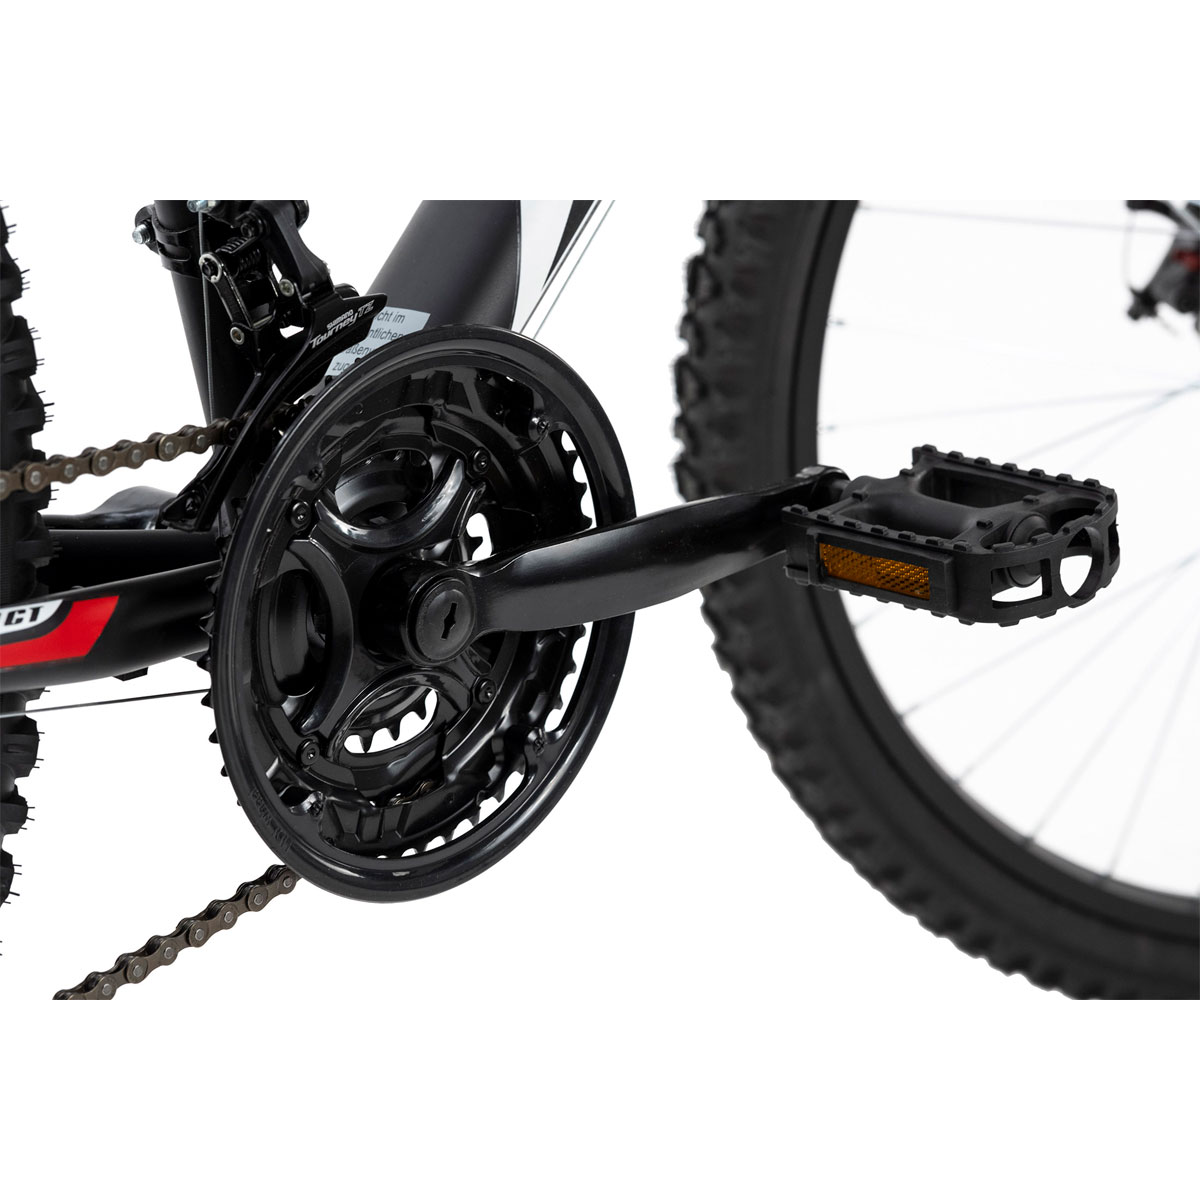 Mountainbike „Xtinct“, Hardtail, 26 Zoll, 42 cm, schwarz-rot